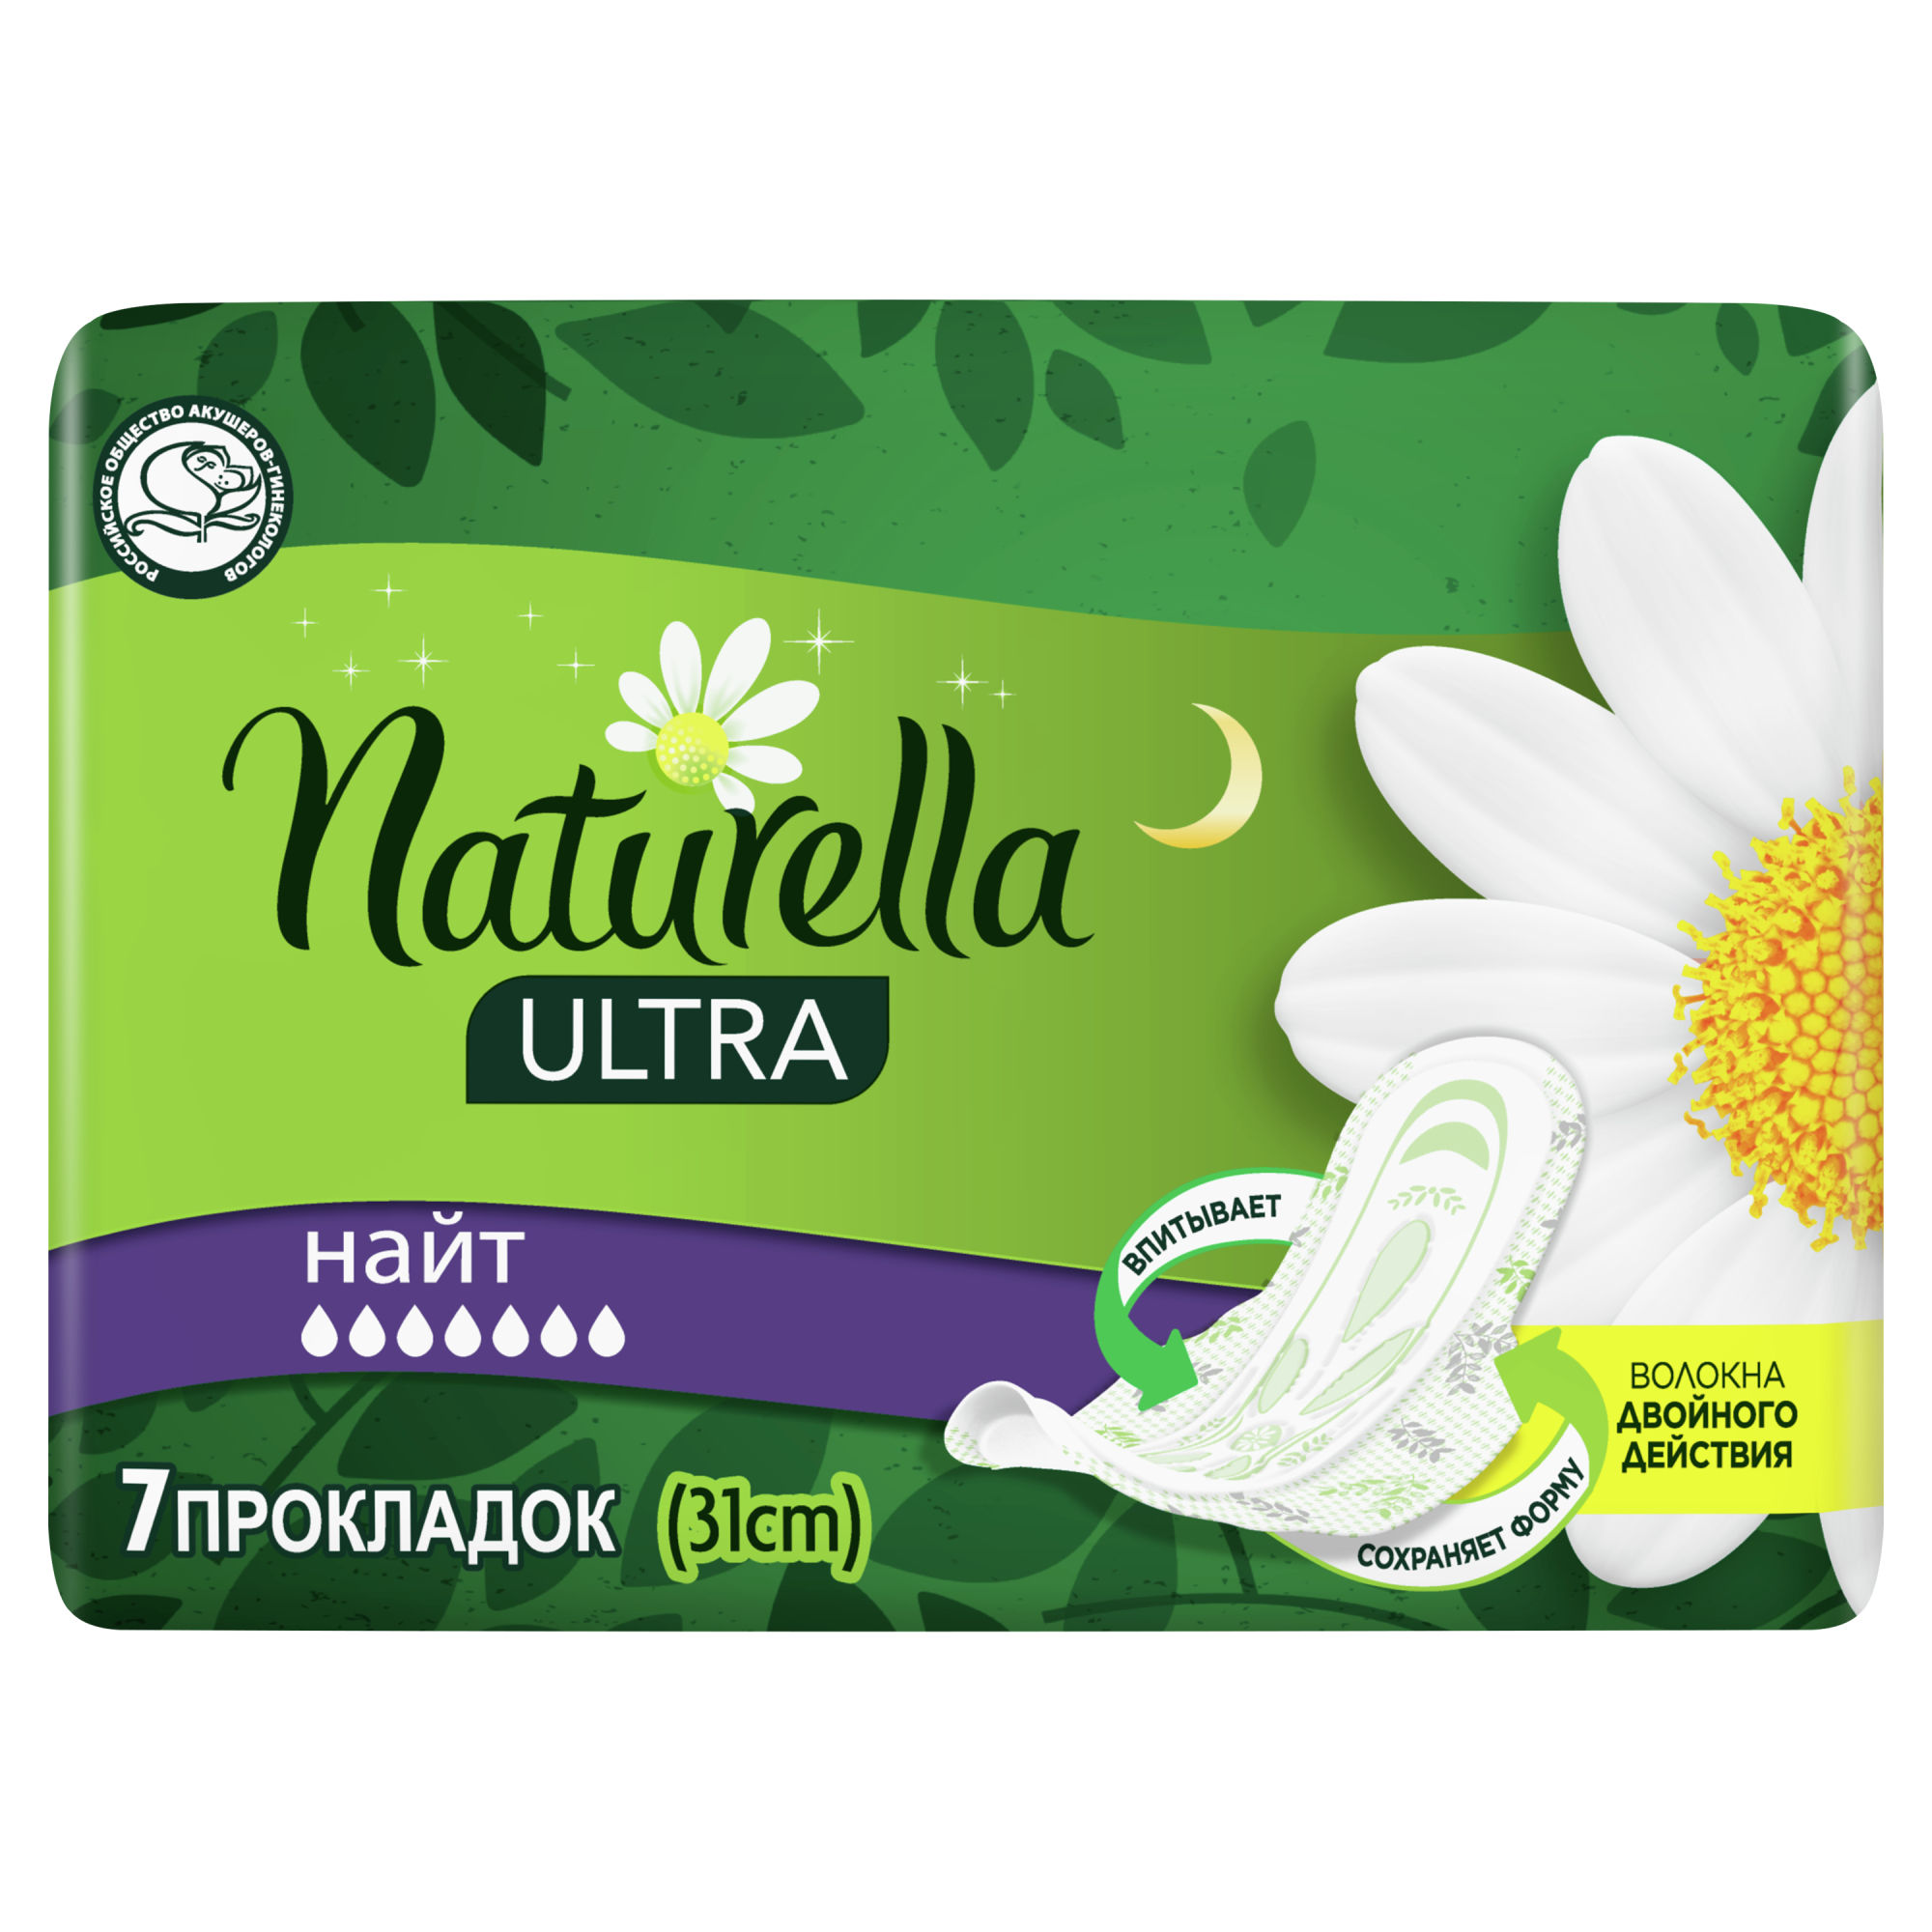 Женские гигиенические ароматизированные прокладки Naturella Ultra Night с ароматом ромашки Single, 7 шт